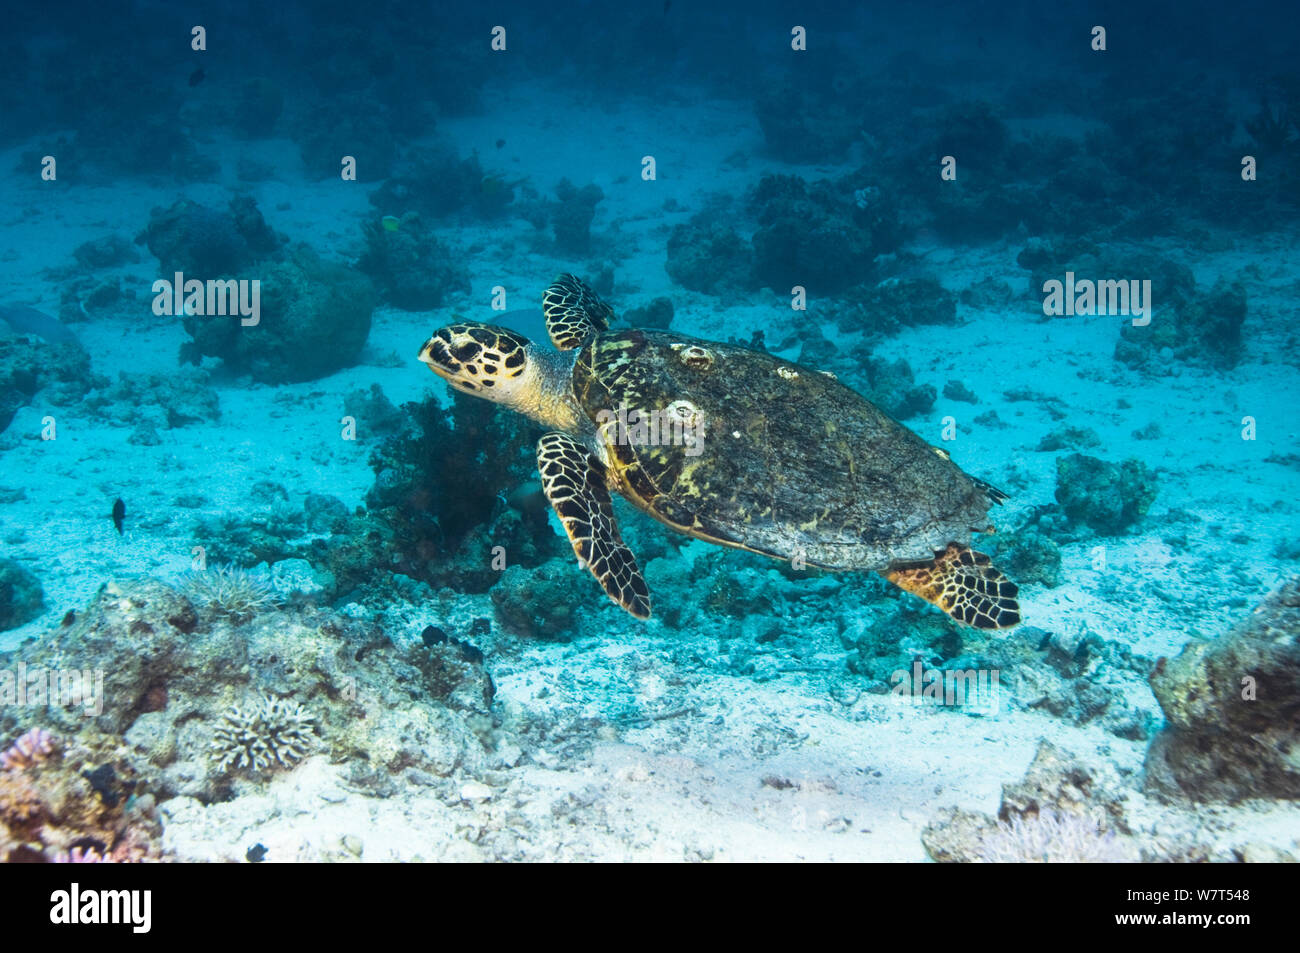 La tortuga carey (Eretmochelys imbricata) nadando a lo largo de arrecifes de coral. Egipto, el Mar Rojo. Foto de stock